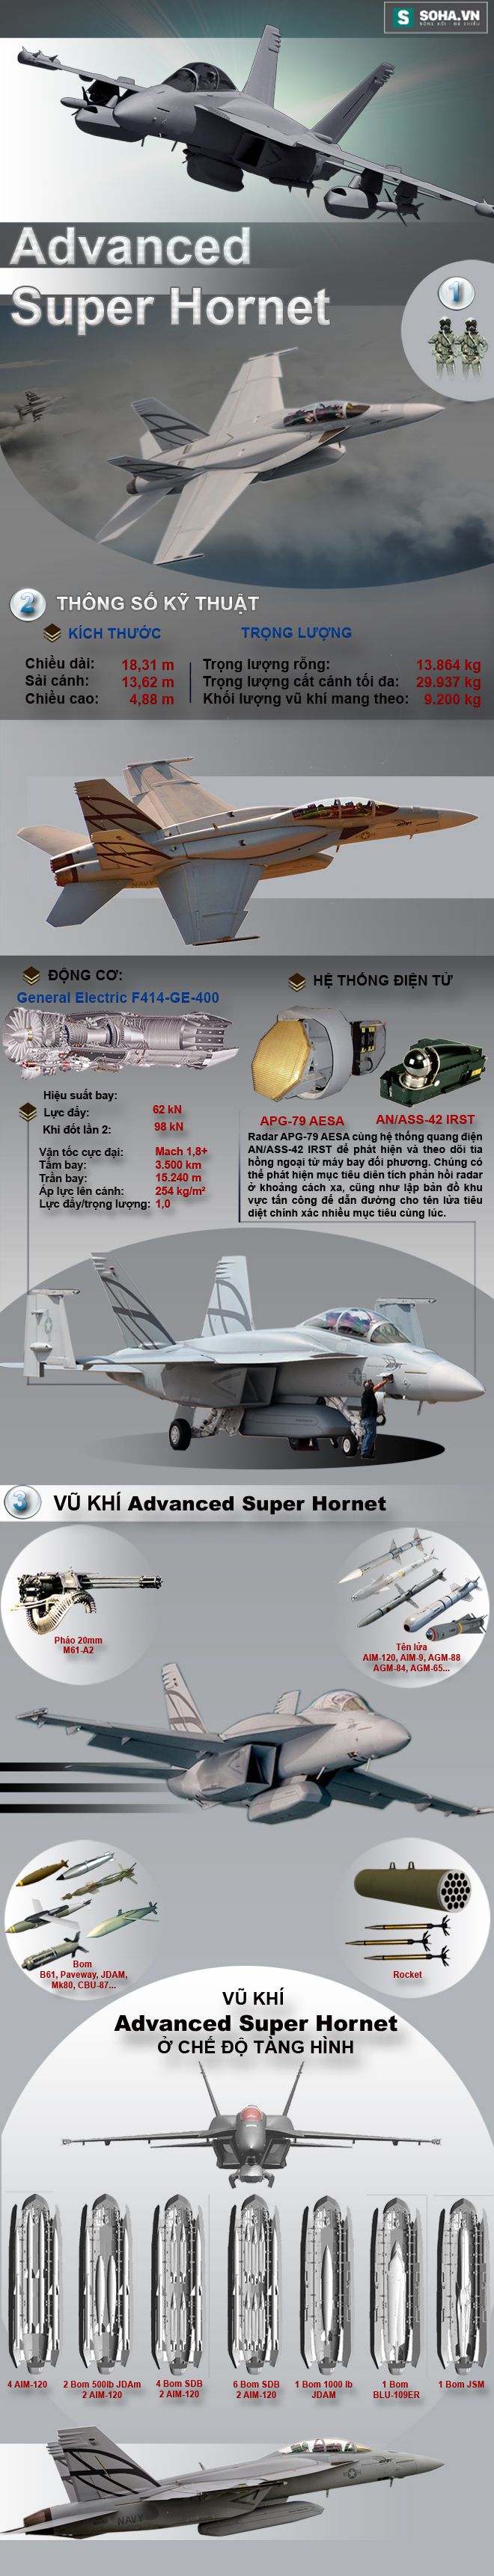 Advanced Super Hornet - Tiêm kích tốt nhất Mỹ có thể bán cho VN - Ảnh 1.